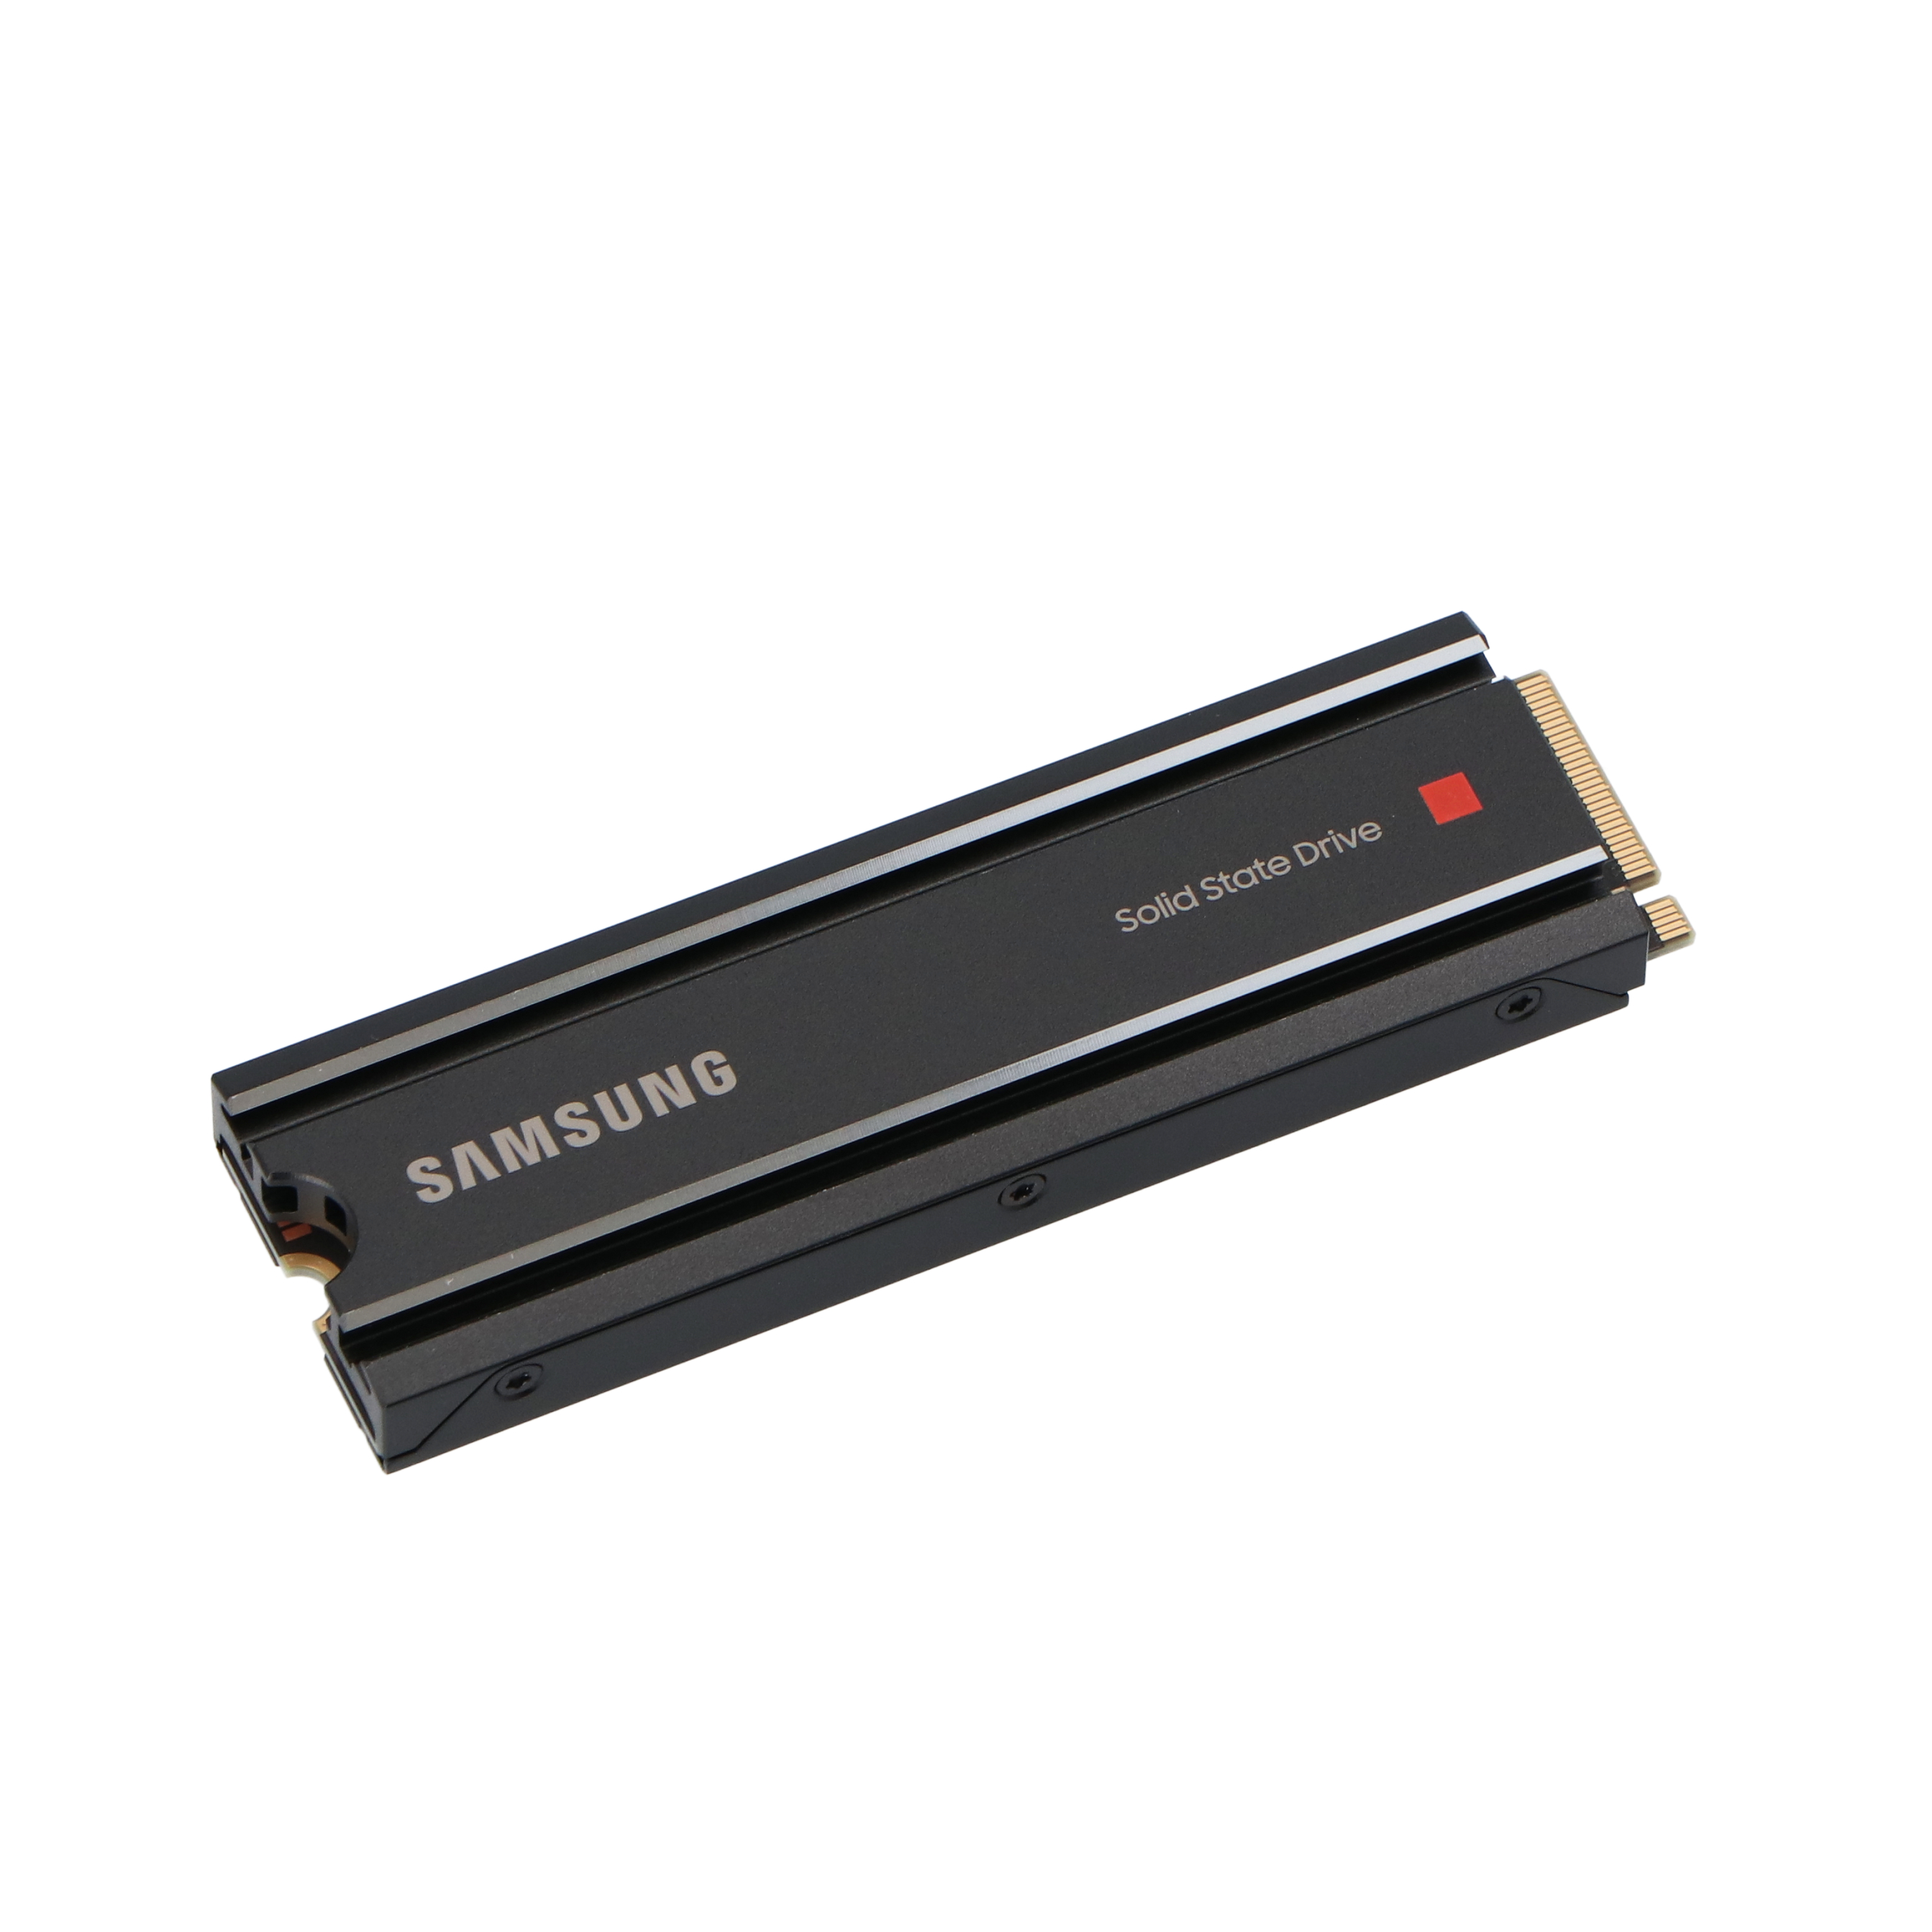 日本サムスン Samsung 980 PRO ヒートシンクモデル 1TB PS5動作確認済み PCIe 4.0(最大転送速度 7,000MB 秒) N